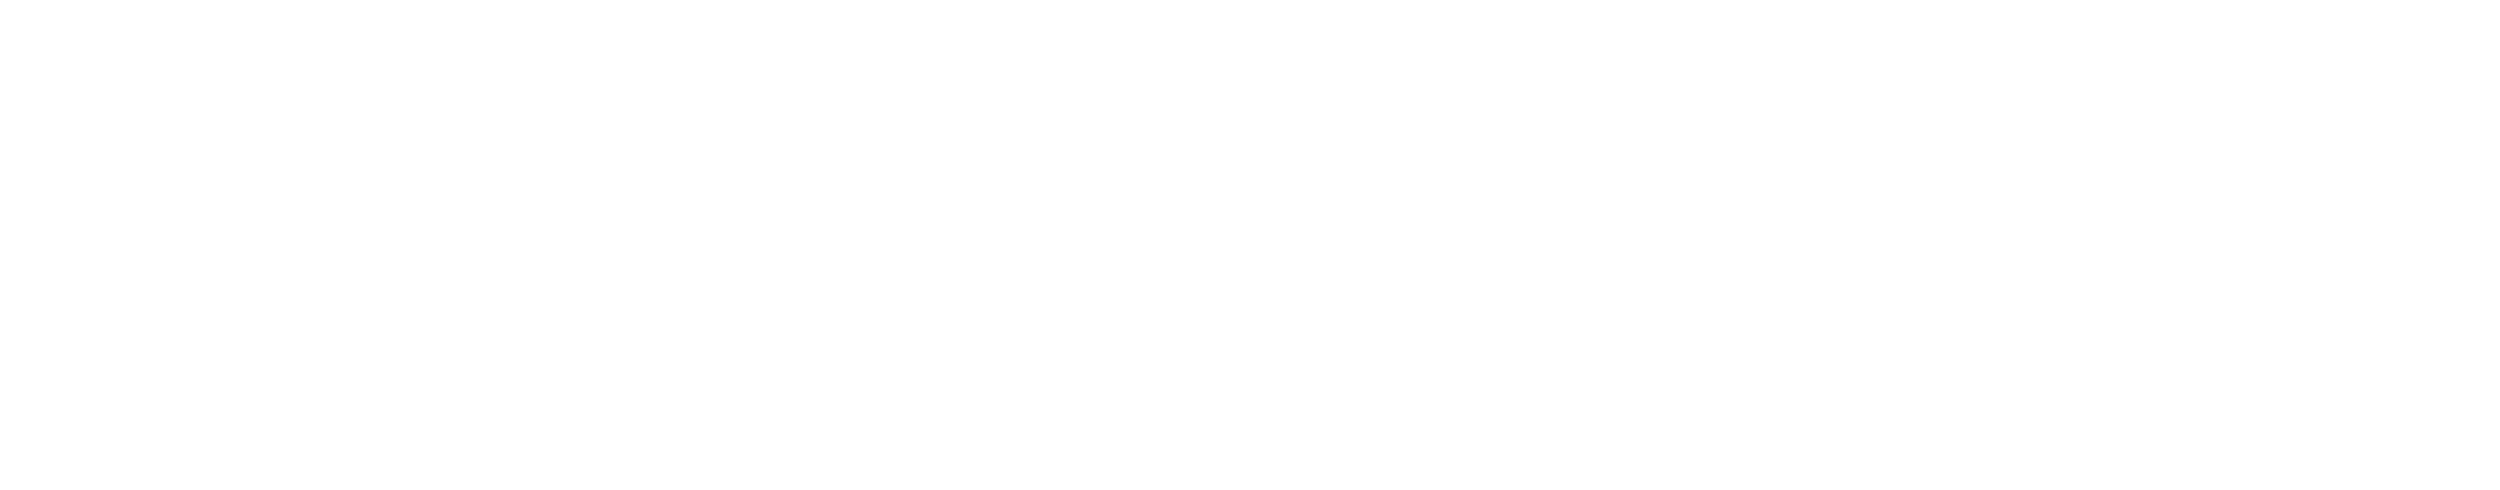 black-samsung-logo-png-21.png